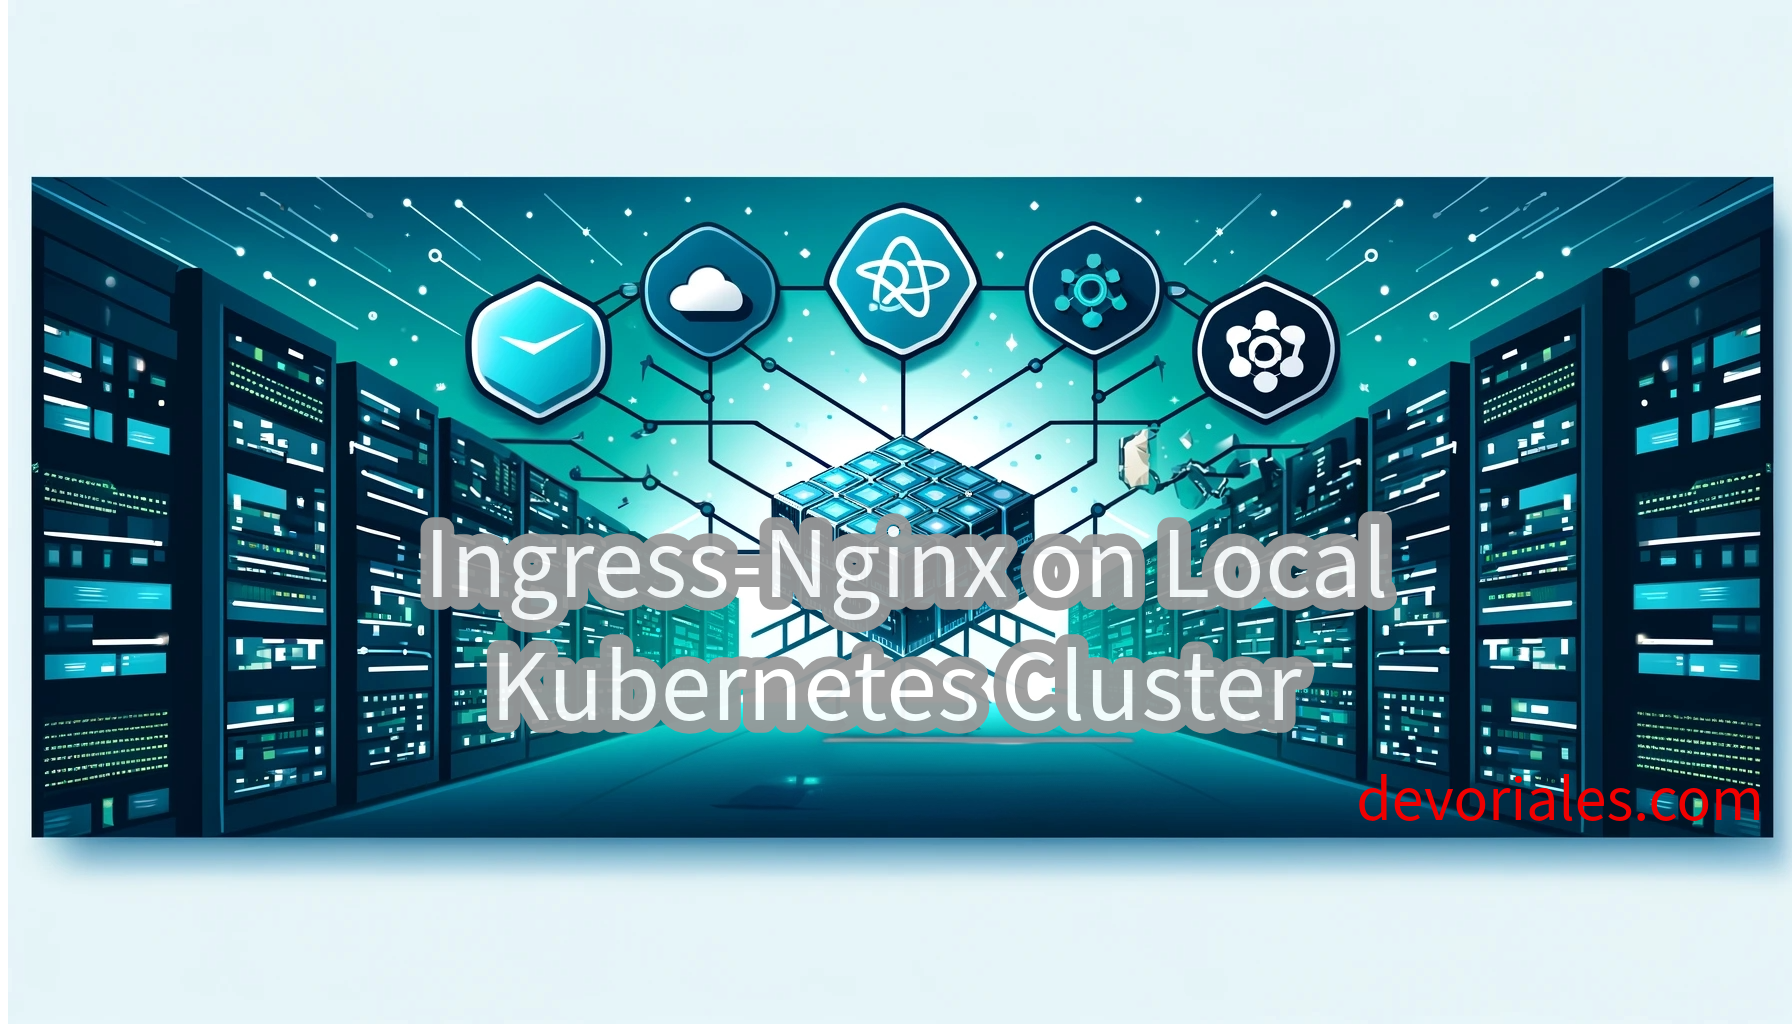 run ingress on local kubernetes cluster